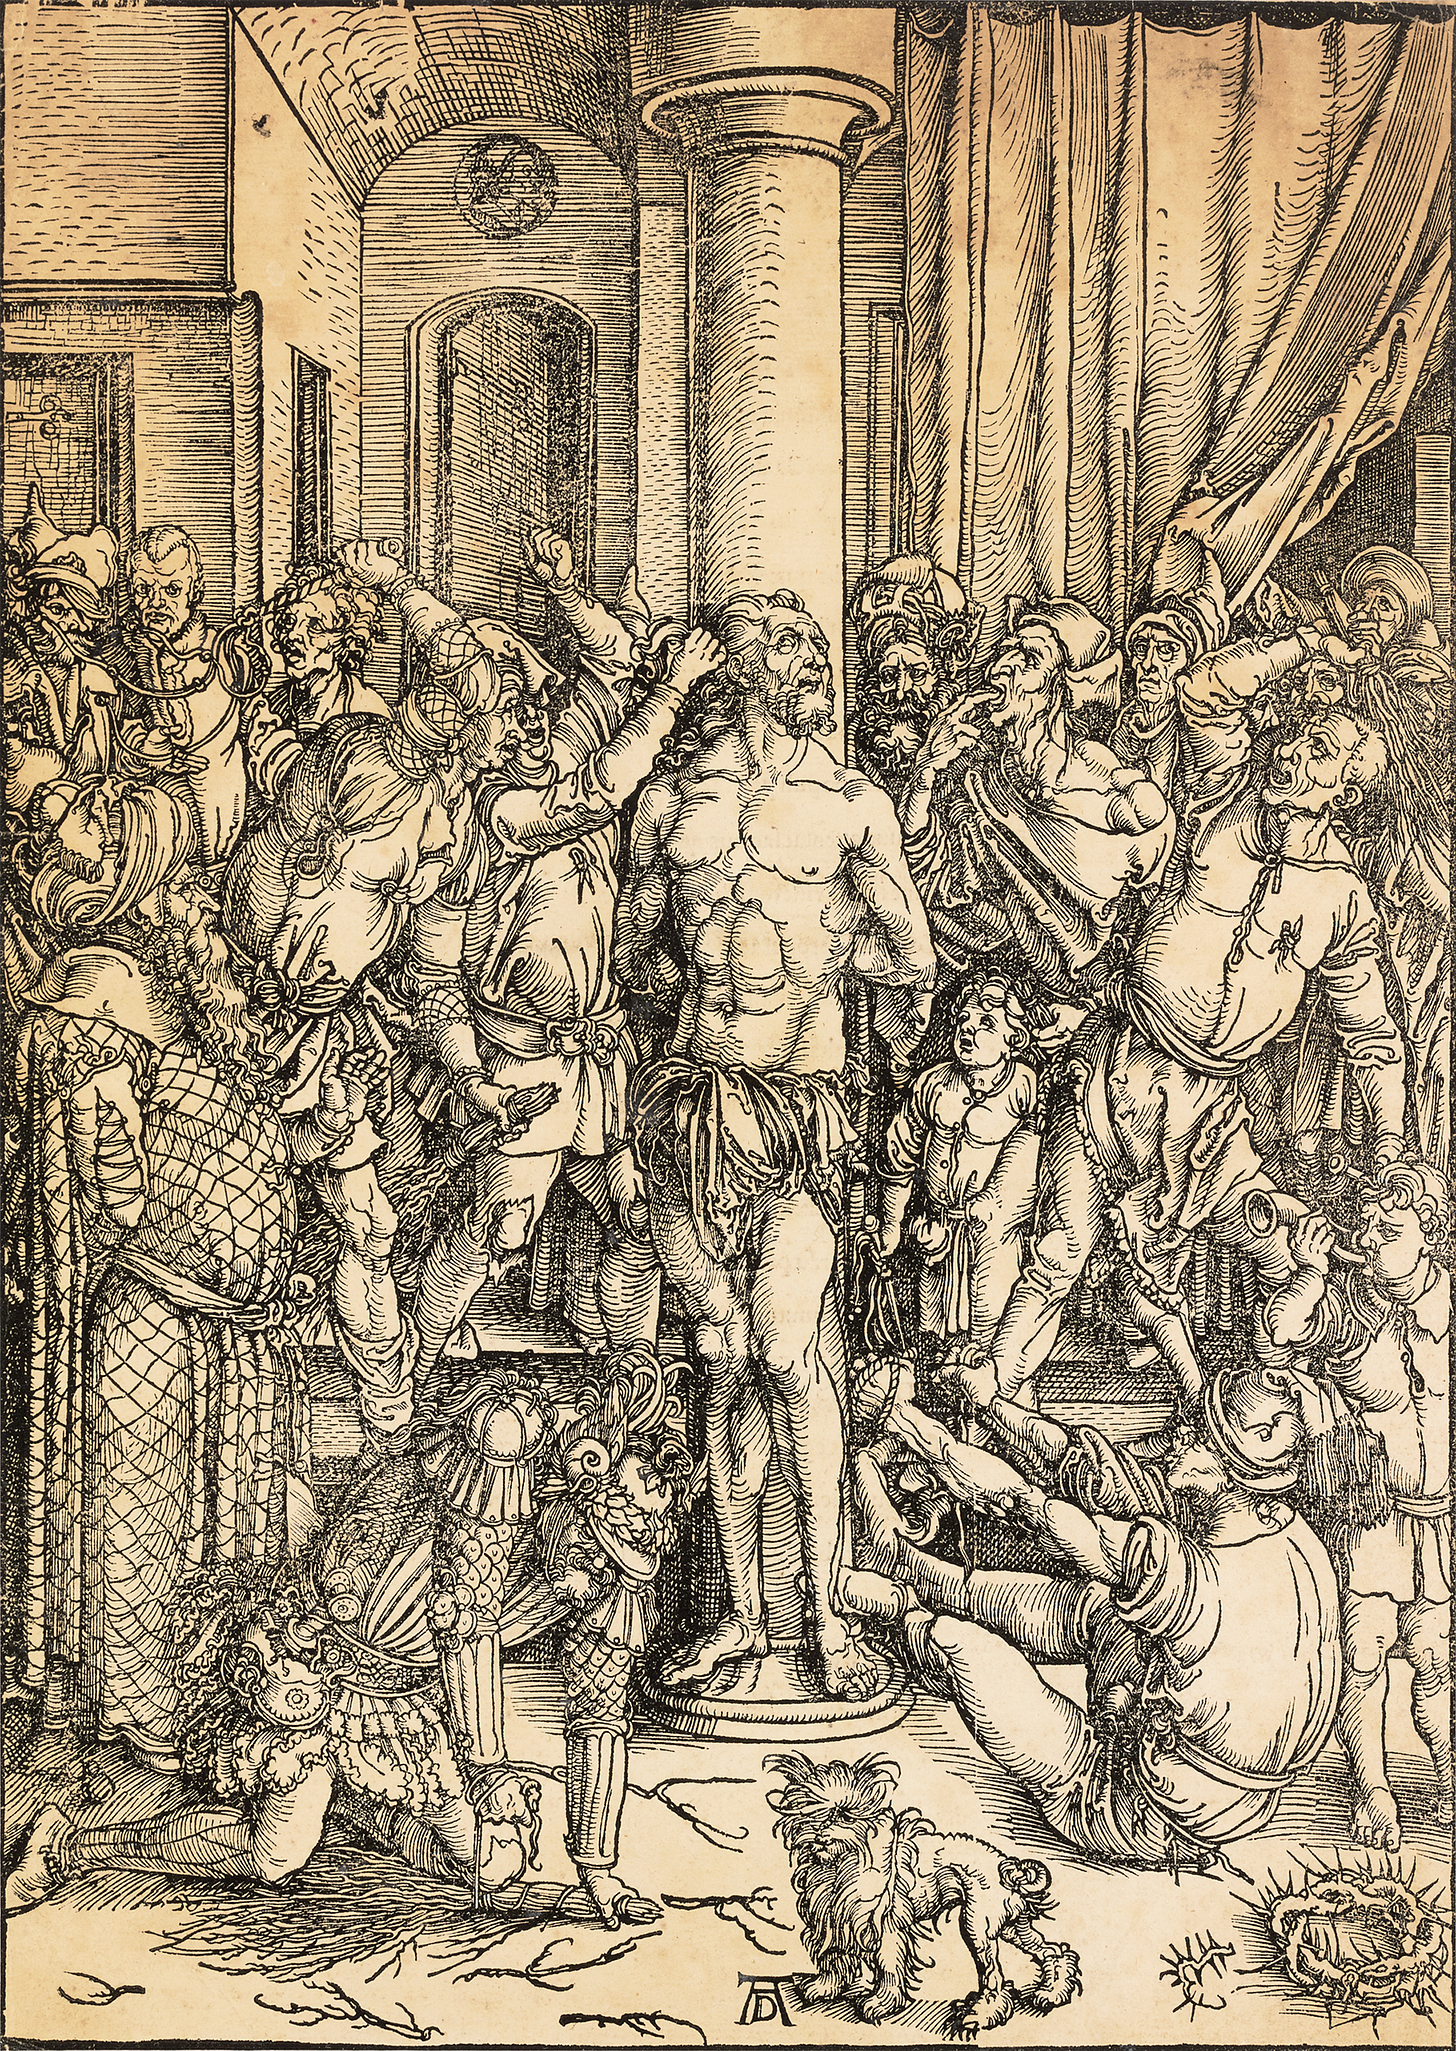 The Scourging of Christ by Albrecht Dürer | M.S. Rau